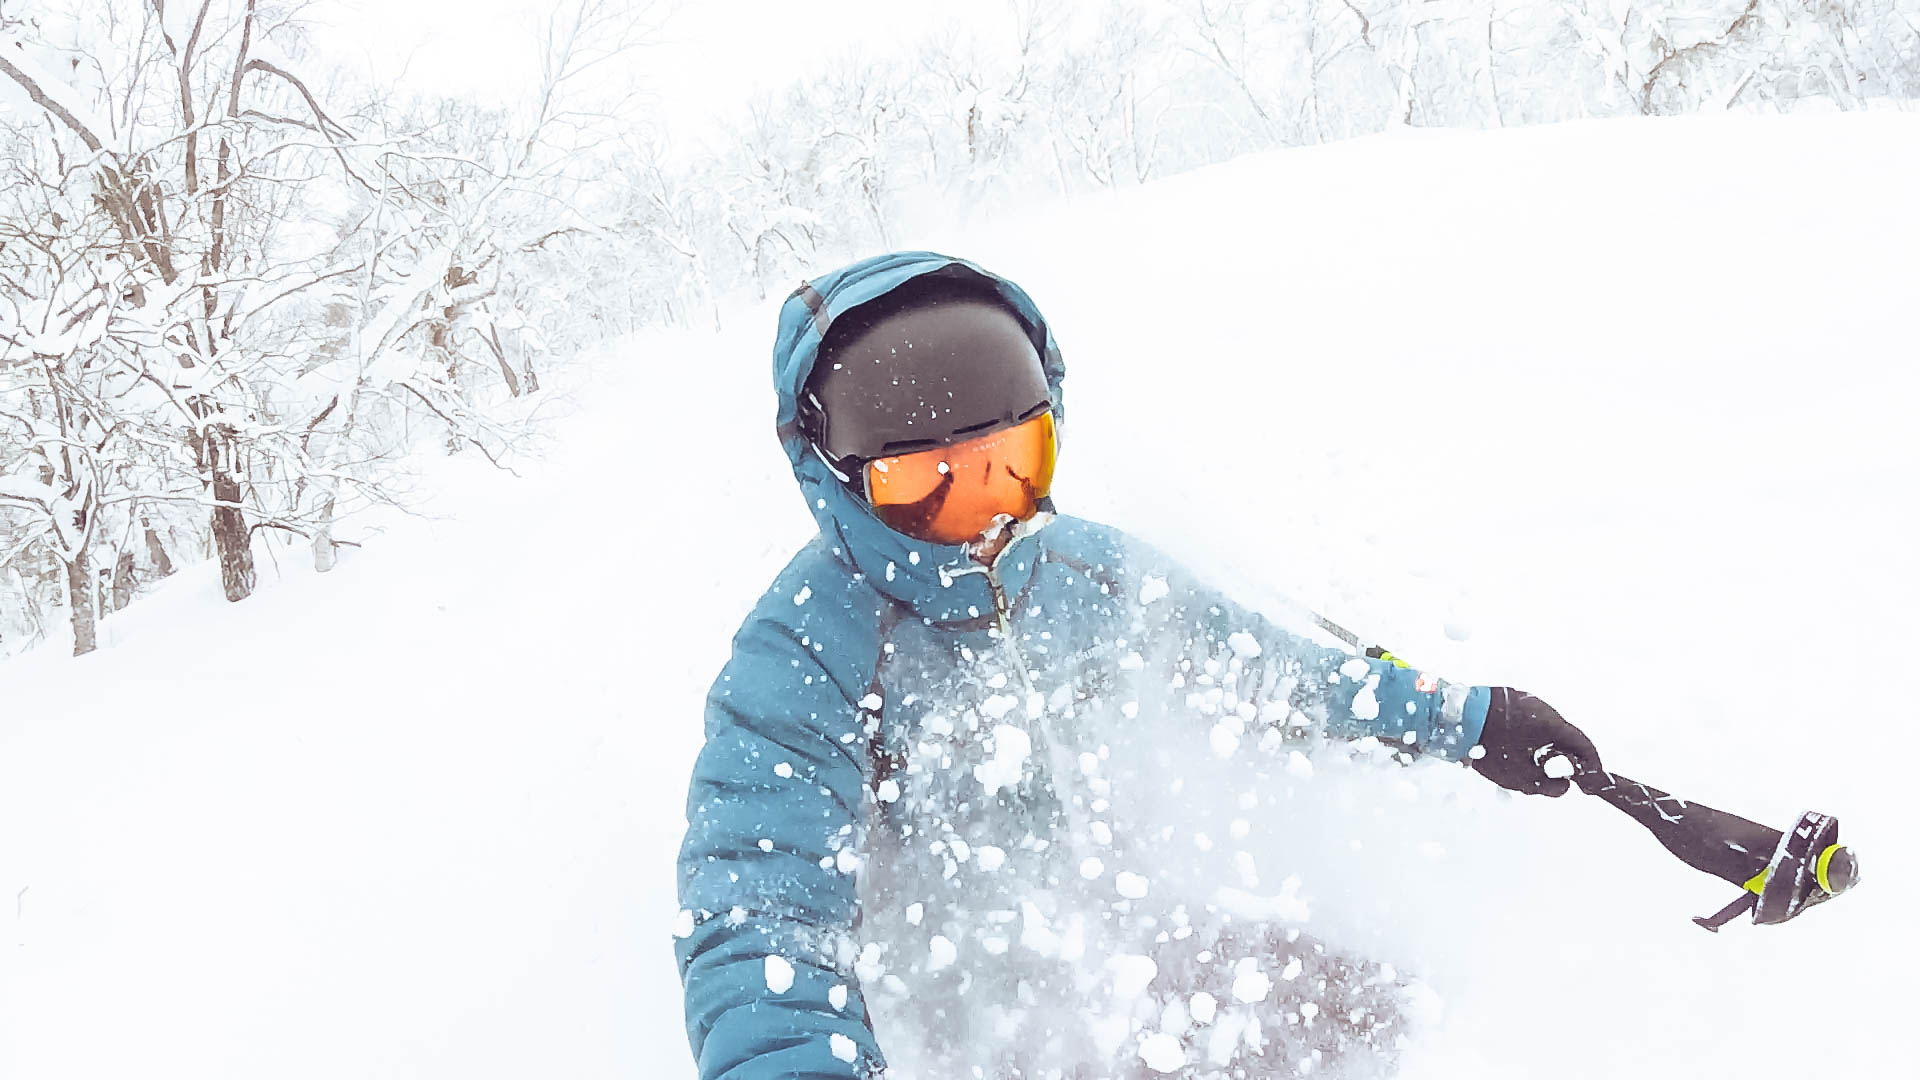 Rusutsu Japan - Powder Skiing - GoPro